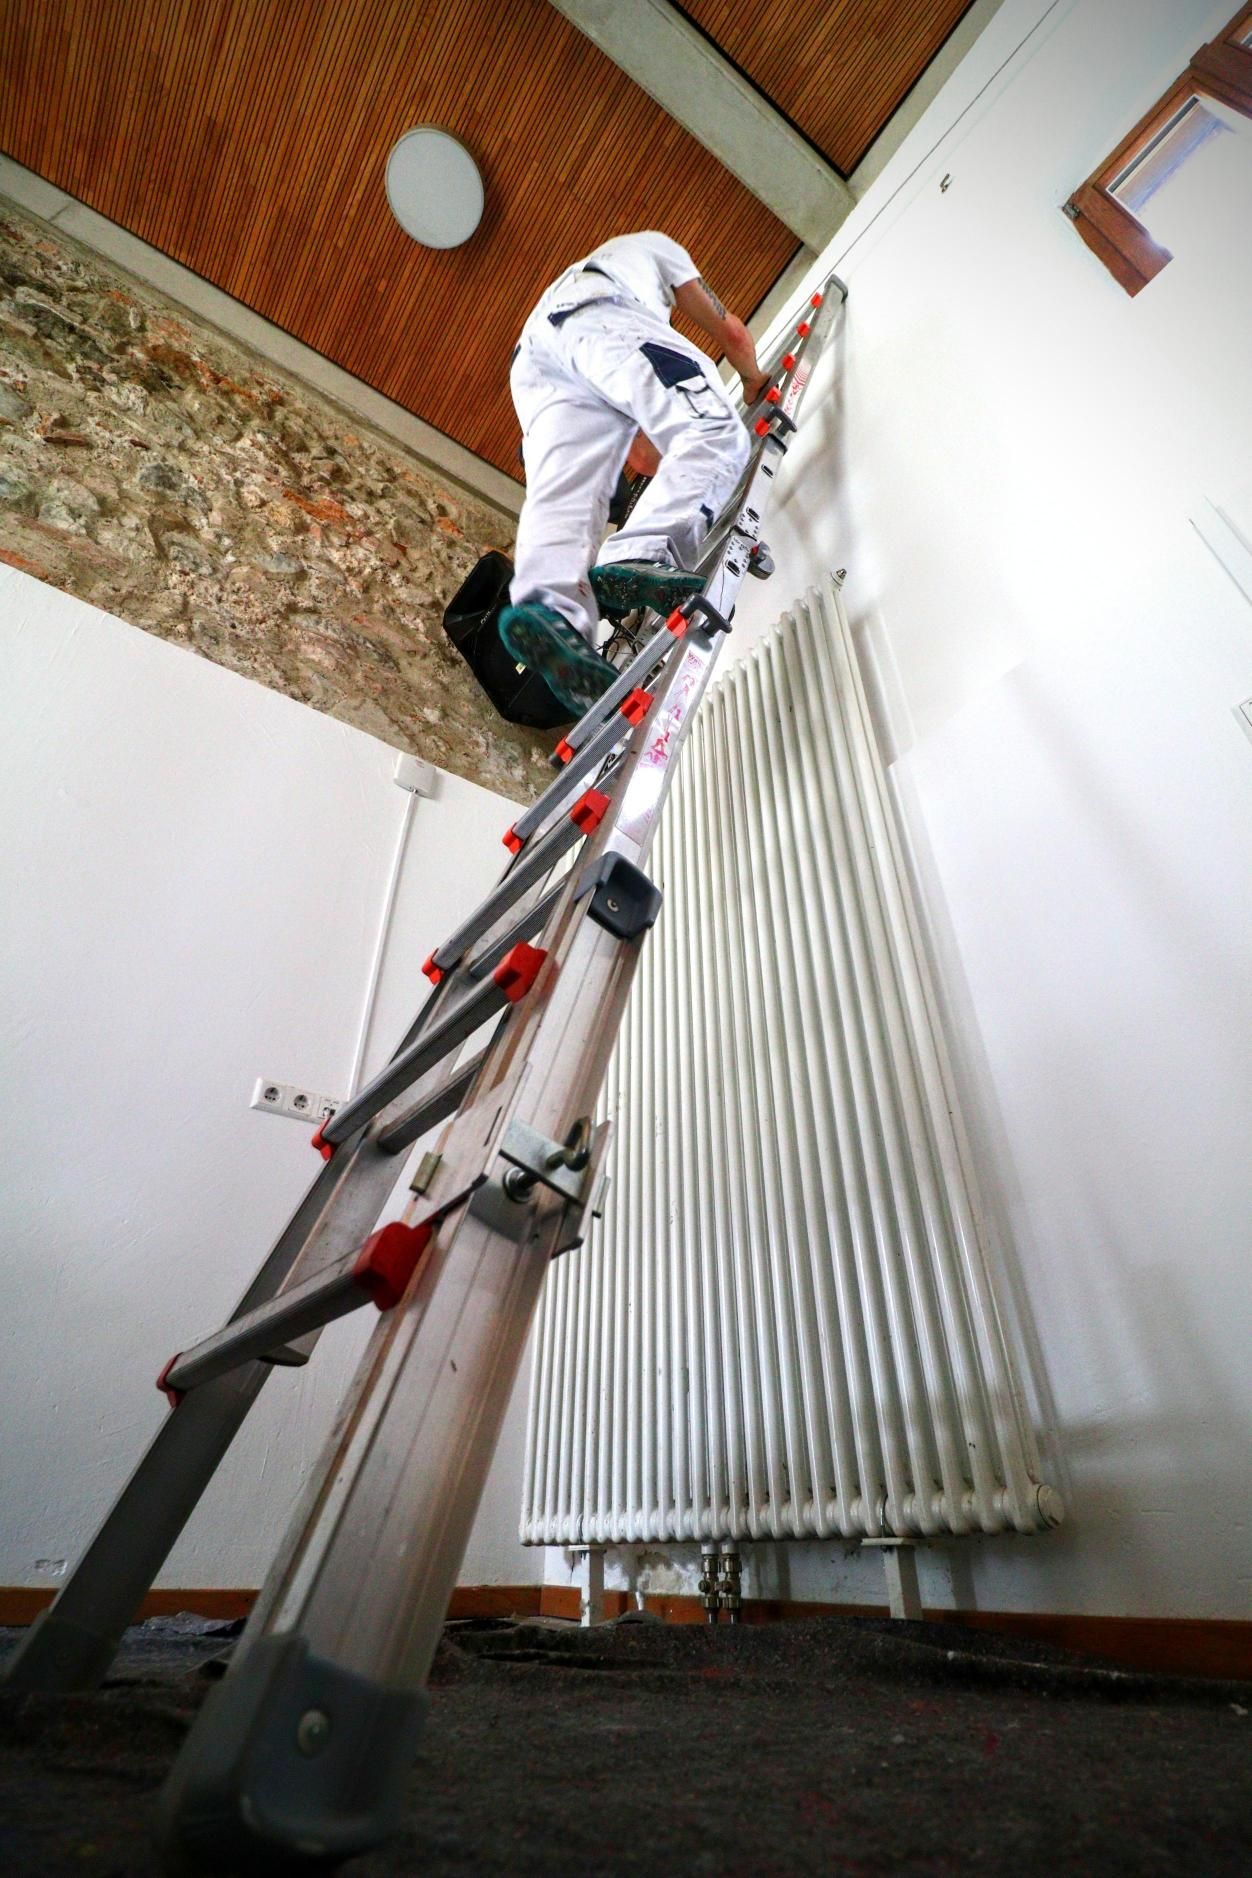 Maler Mario Erbertseder klettert im Jugendzentrum ChillMill in Rosenheim auf eine Leier um die Wand zu streichen